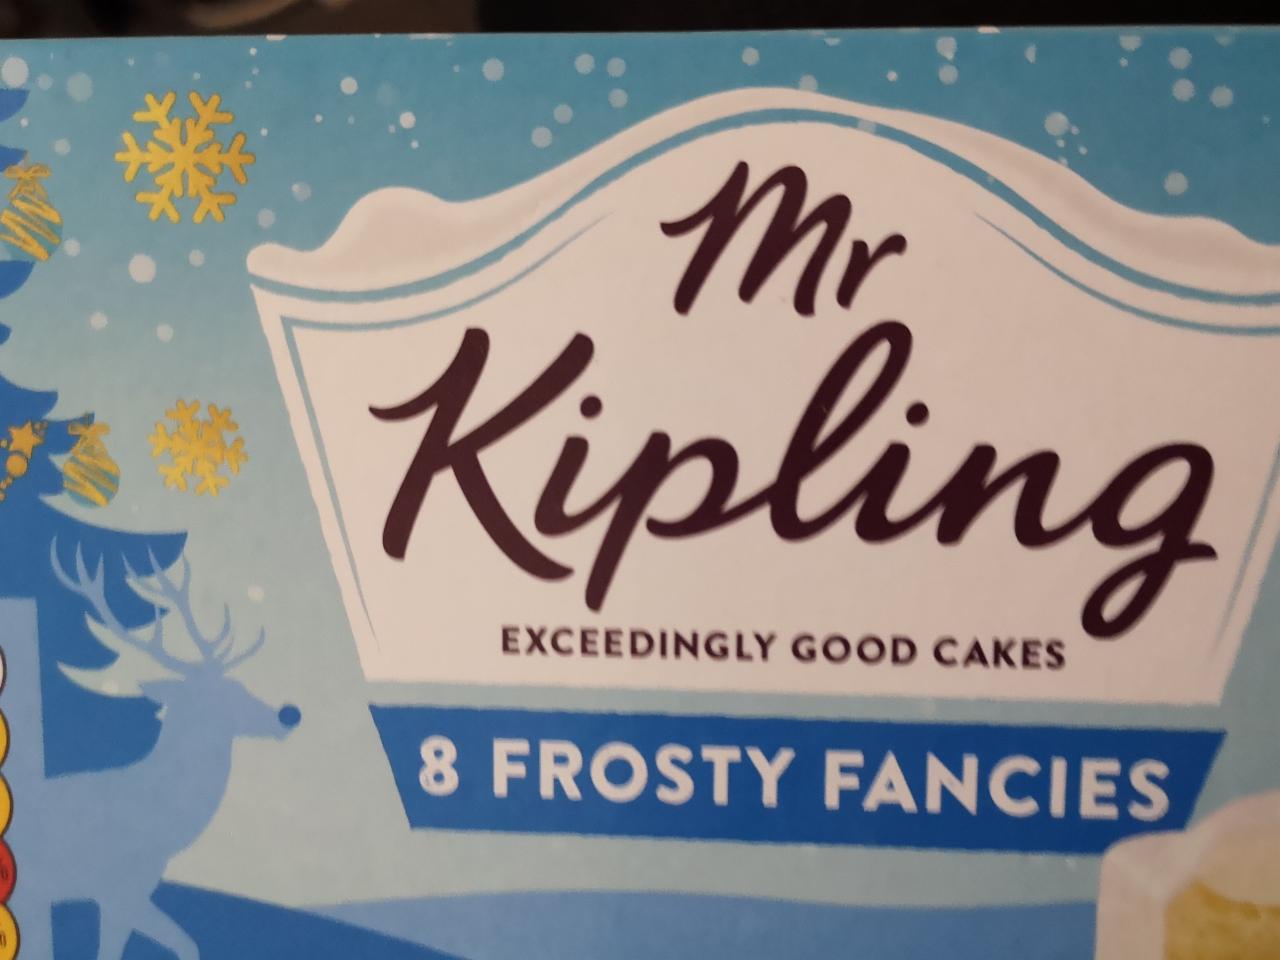 Fotografie - 8 frosty Fancies Mr Kipling